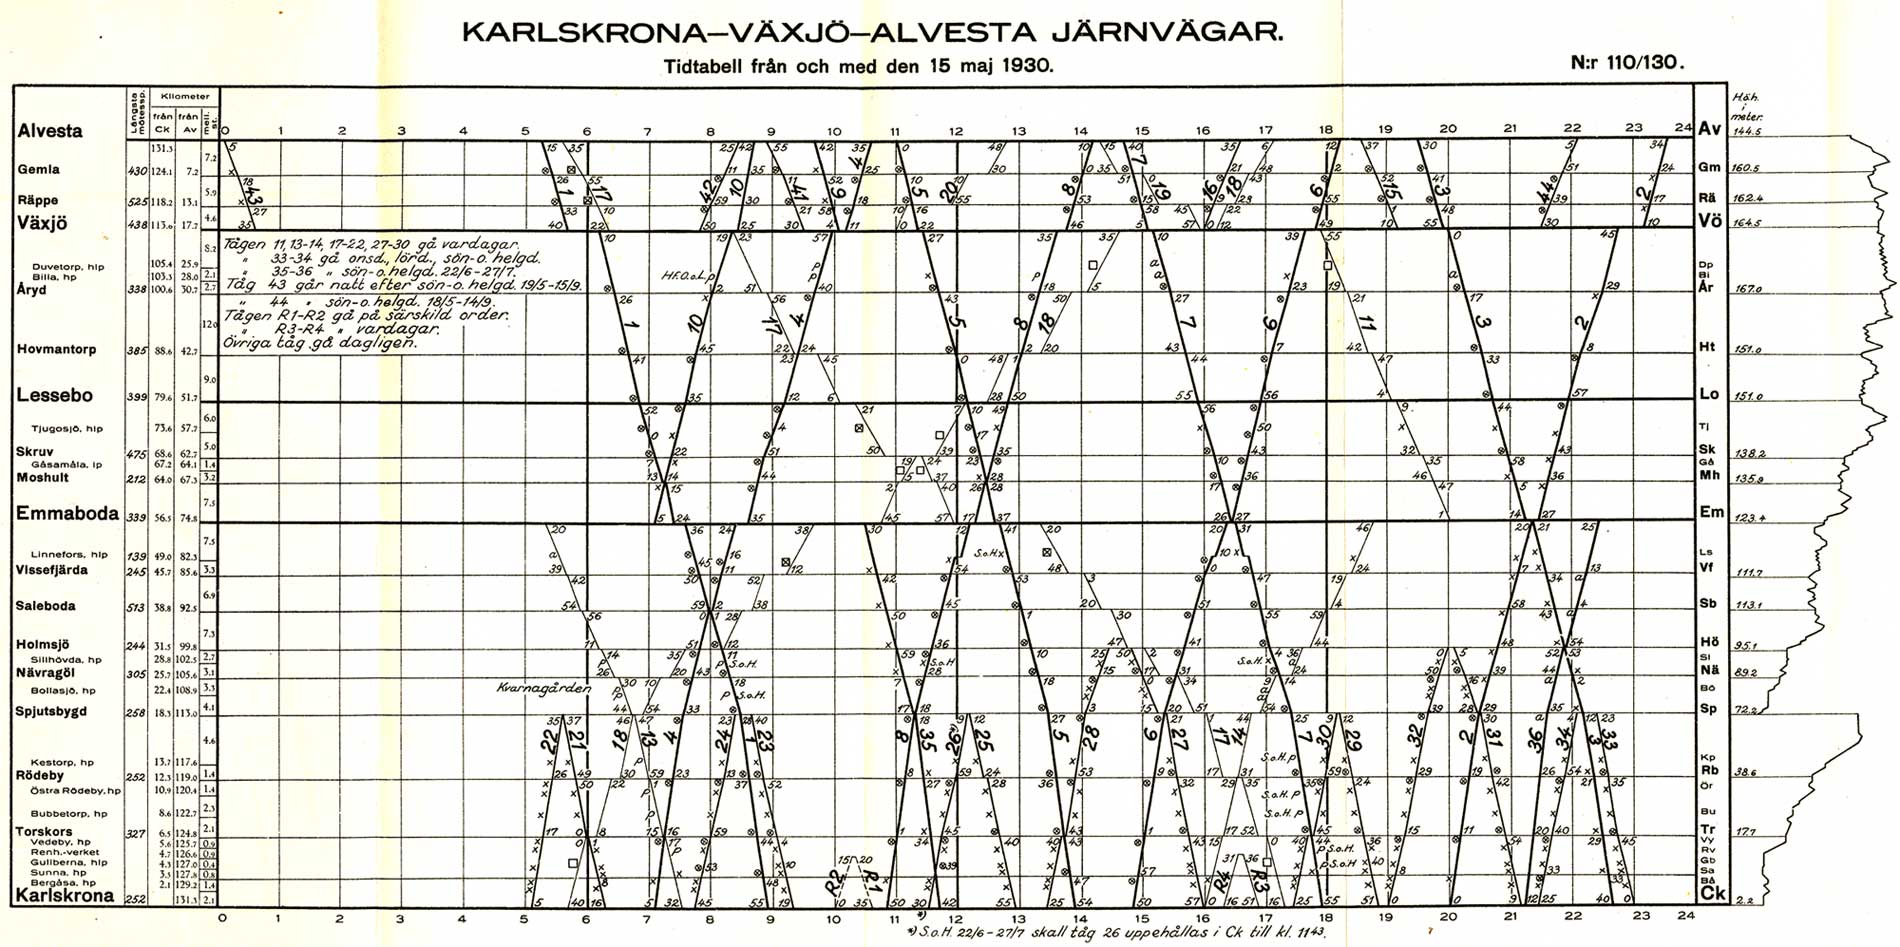 CVJ, grafisk tidtabell gällande från 15 maj 1930, Karlskrona - Växjö - Alvesta